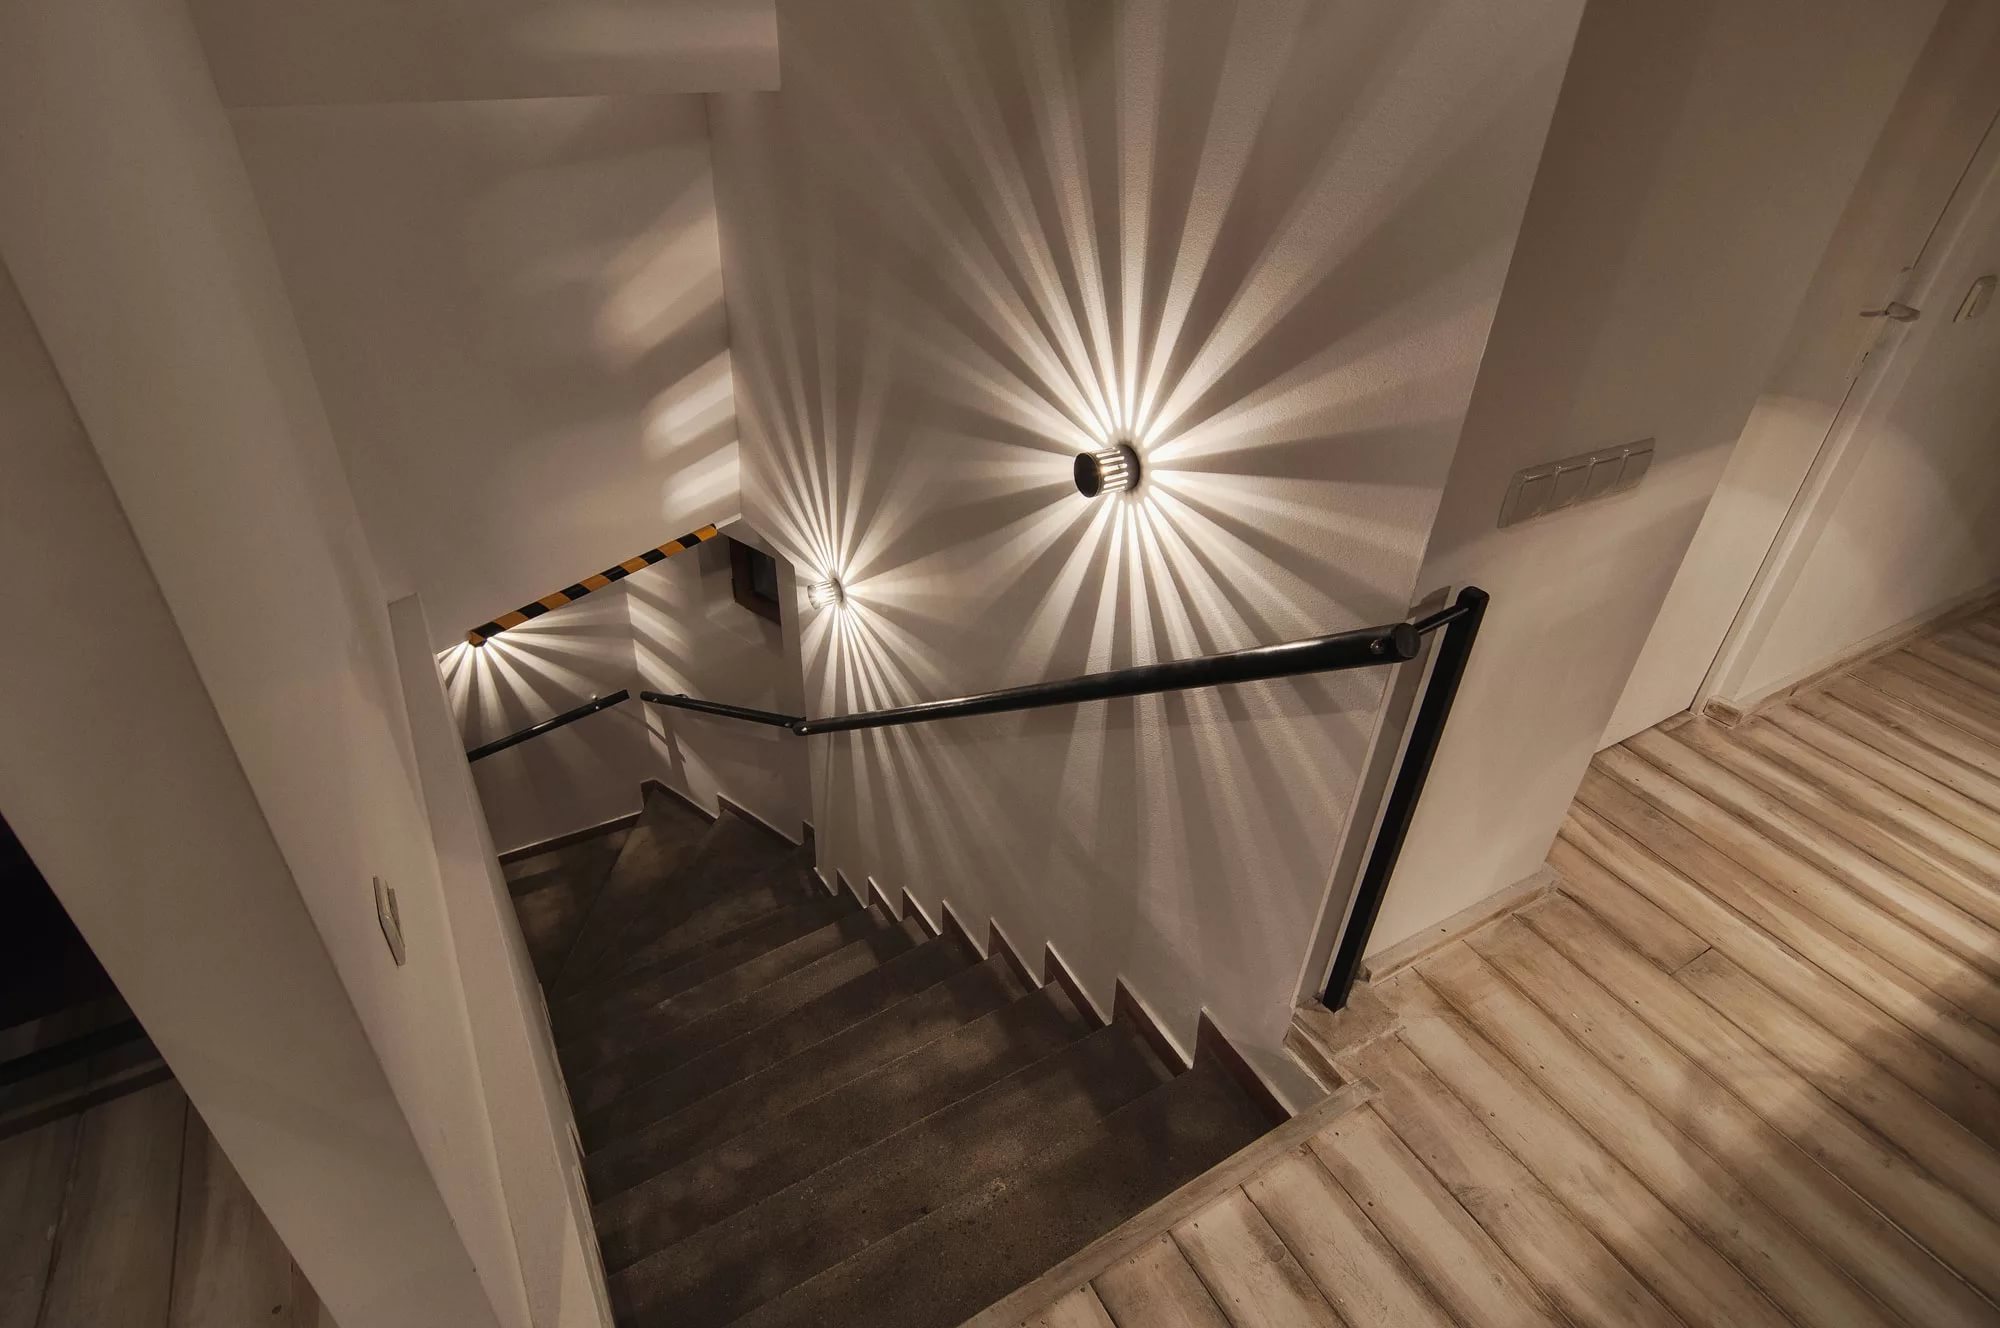 Светильники На Лестнице В Частном Доме Фото